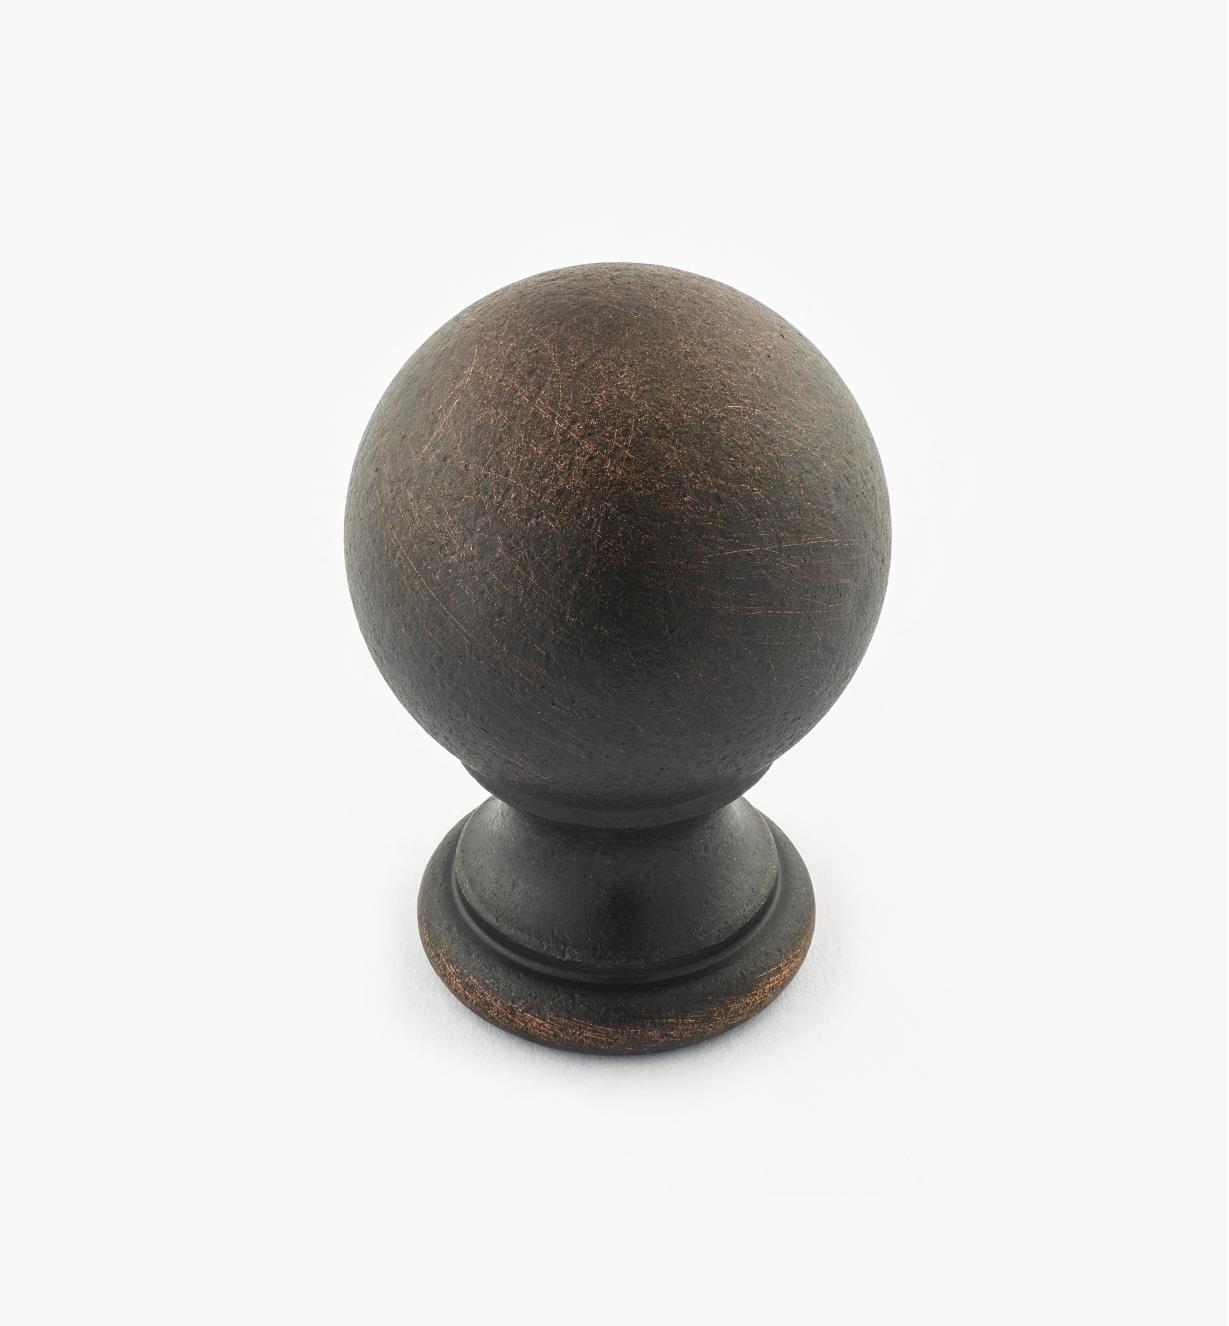 02W3264 - Bouton-boule de 1 1/8 po x 1 3/4 po, série Vieux Bronze, laiton tourné